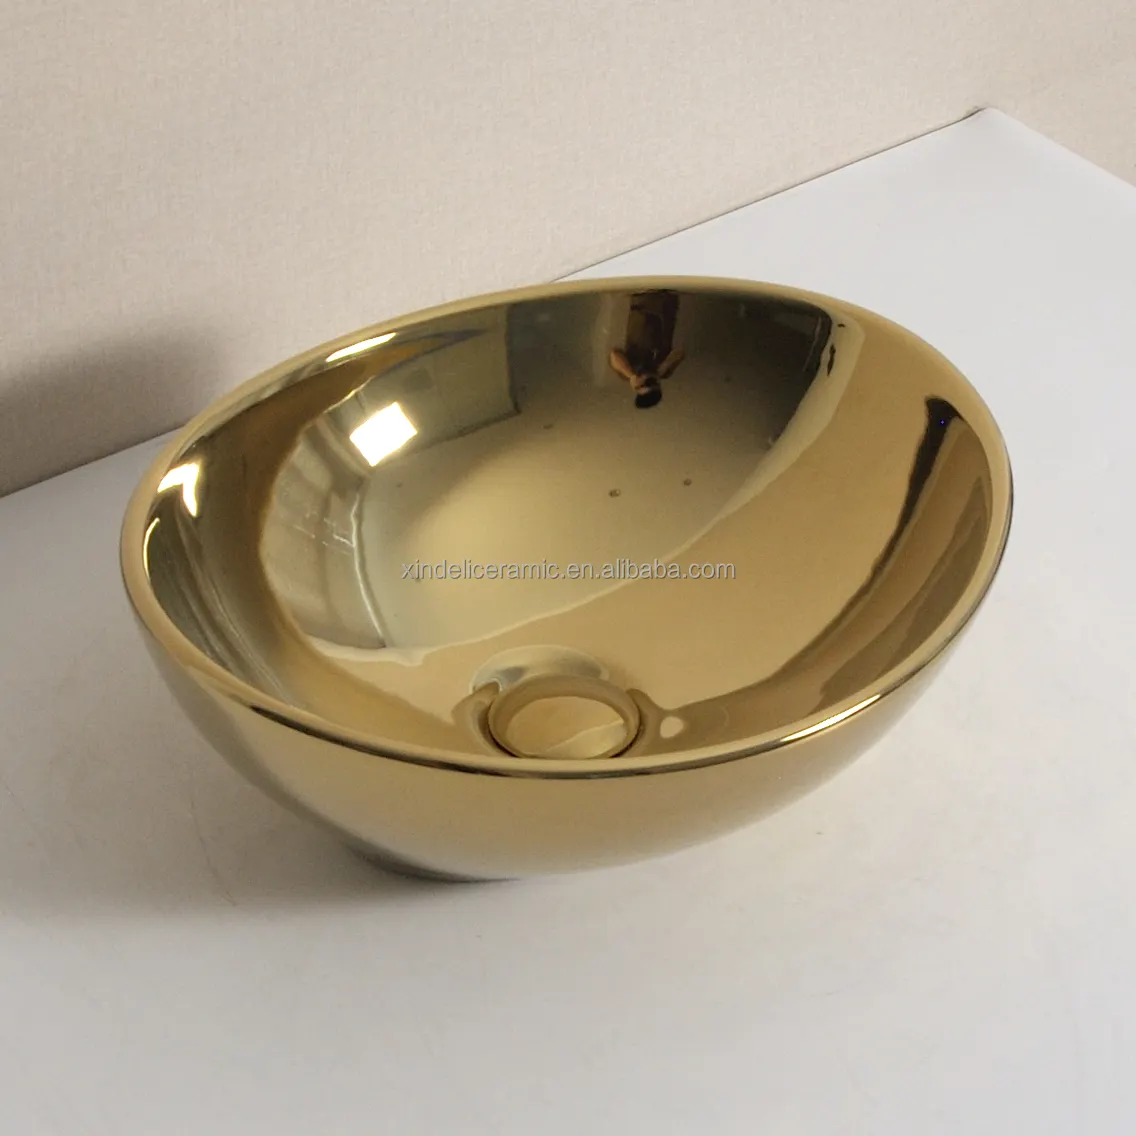 Comptoir ovale en céramique or, évier de salle de bain, lavabo, petit évier de luxe doré